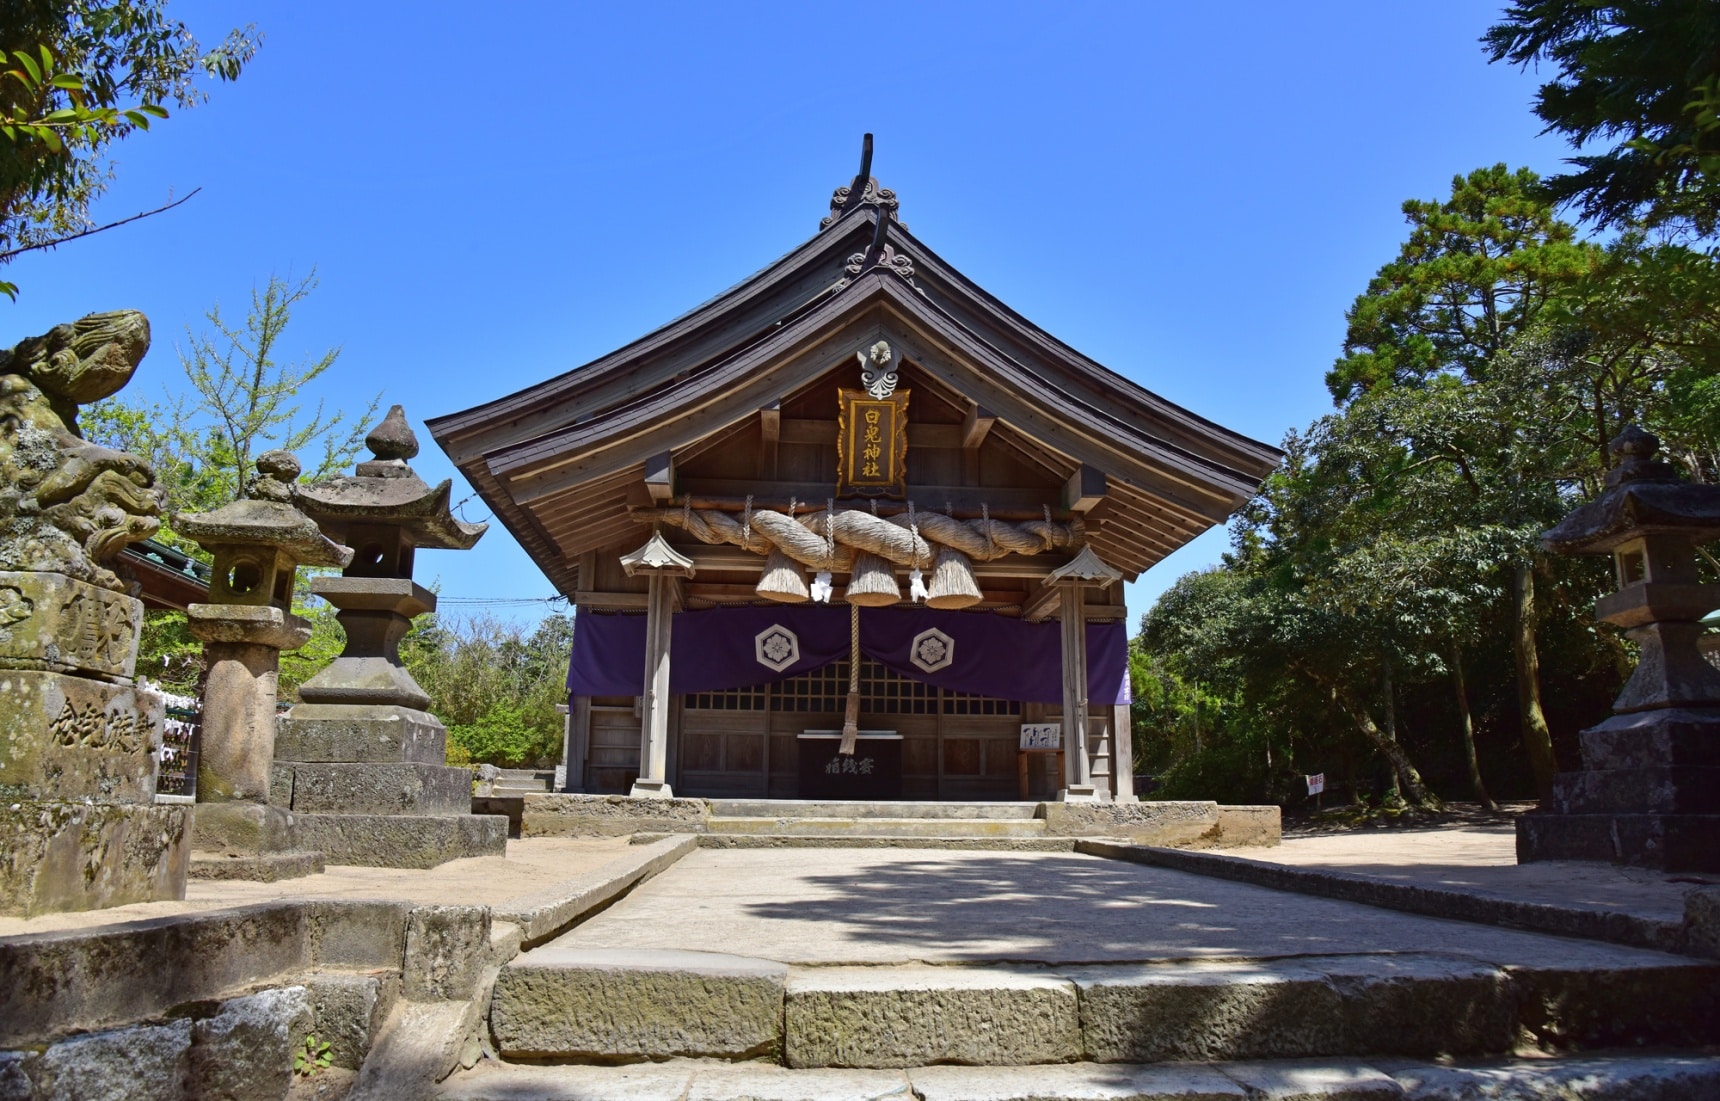 ประวัติศาสตร์และวัฒนธรรมของทตโตริที่เชื่อมโยงมาจากตำนานเทพเจ้าญี่ปุ่น “โคจิกิ”